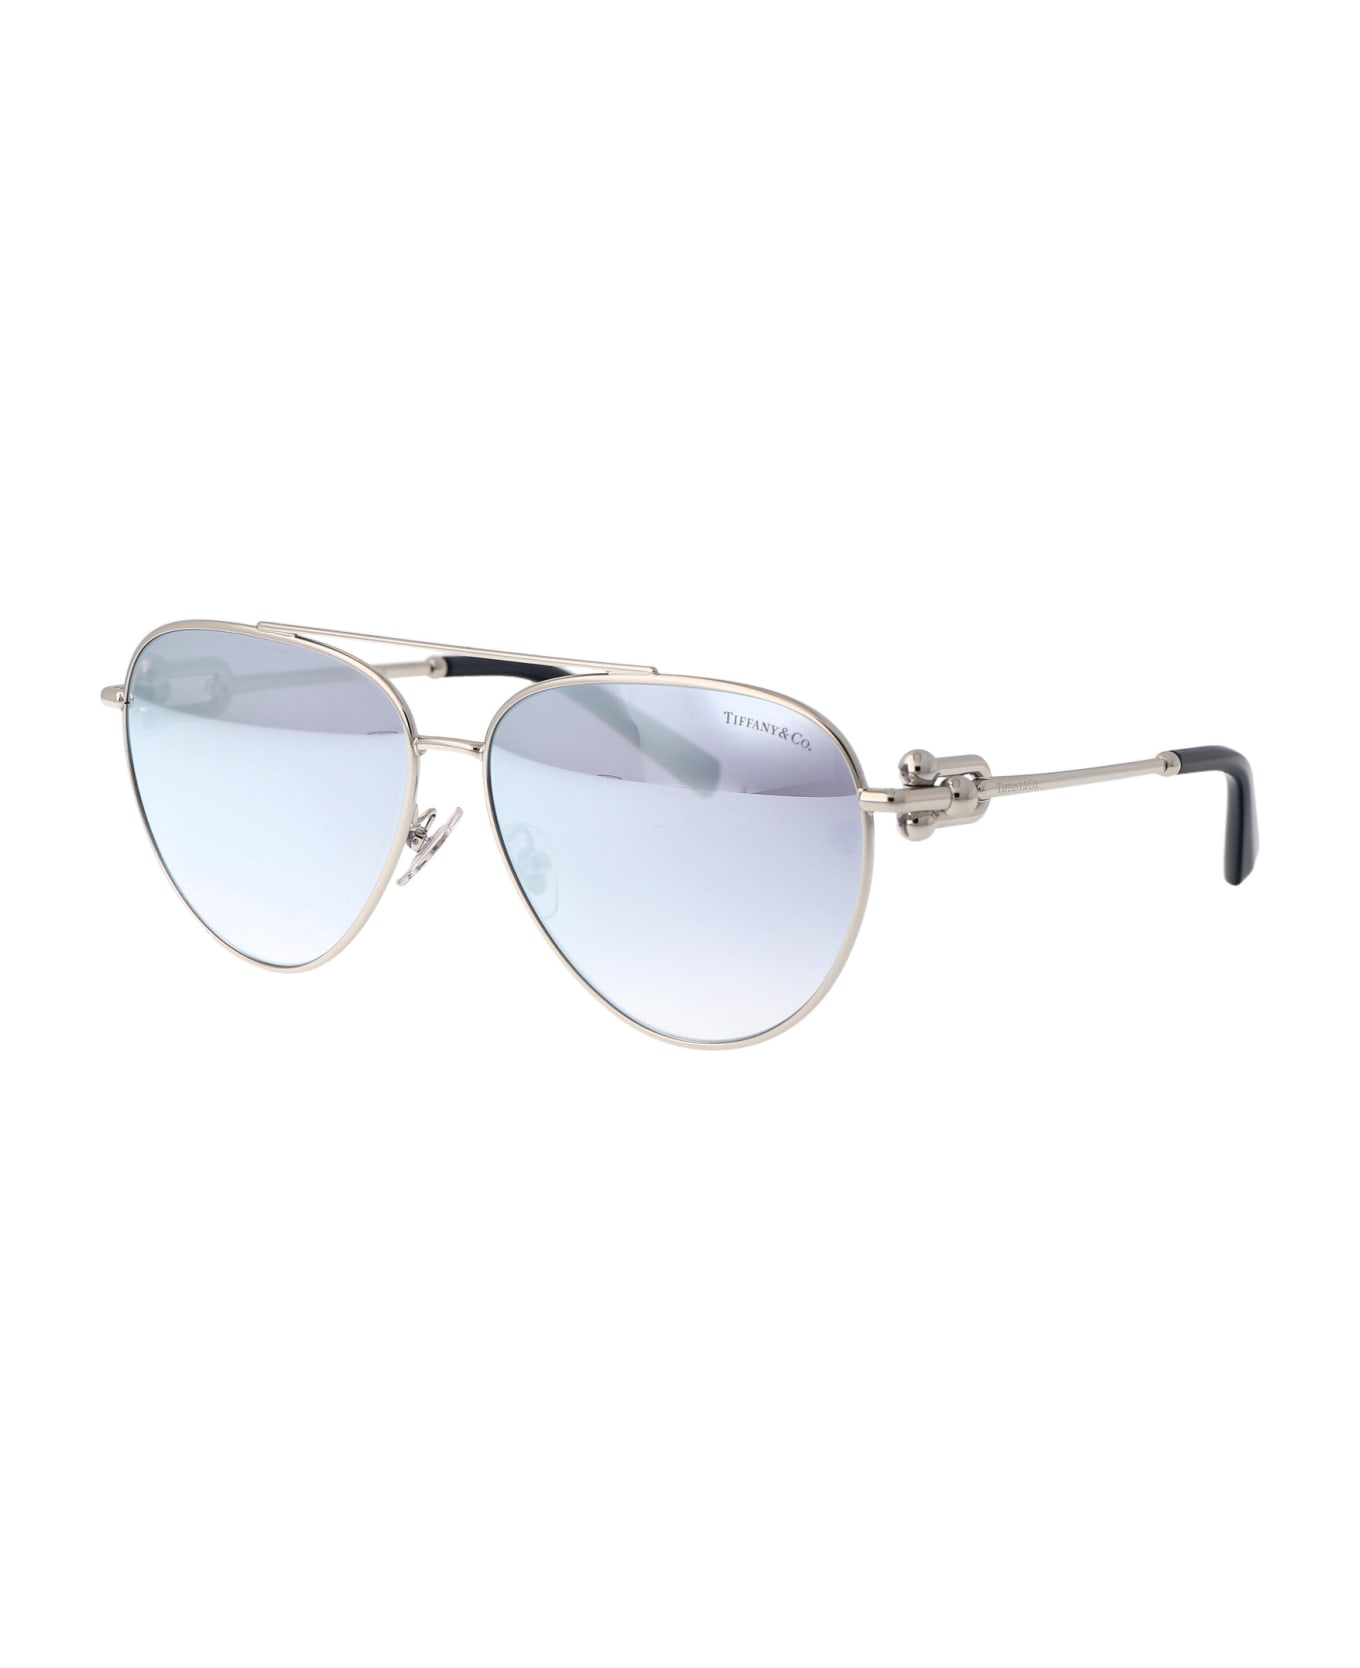 Tiffany & Co. 0tf3092 Sunglasses - 6175V6 Silver サングラス